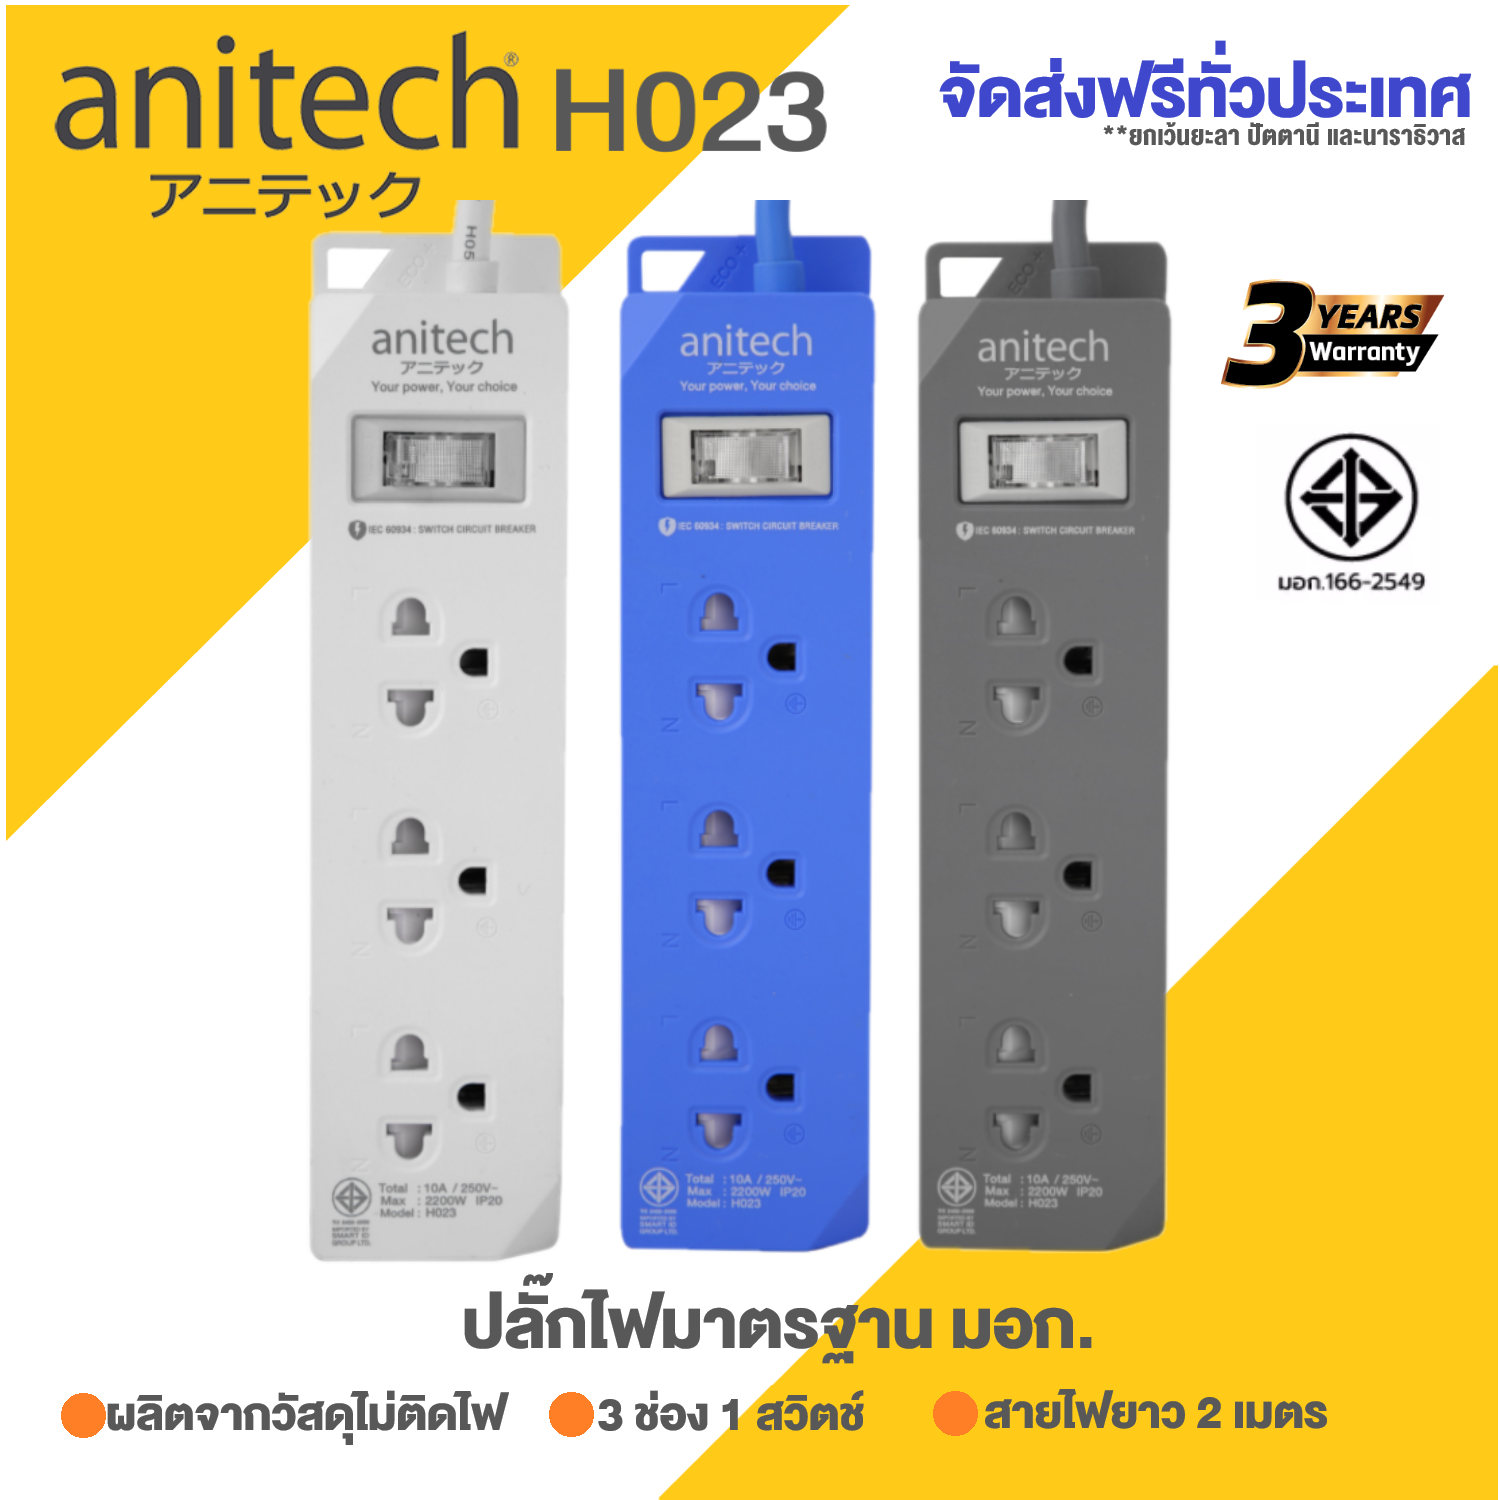 ปลั๊กไฟ Anitech ปลั๊กไฟต่อพ่วง รางปลั๊กไฟ 2 เมตร มาตรฐาน มอก. H023 / H123 3ช่อง 1สวิทช์ H222 2 ช่อง 2 USB ประกัน3ปี วงเงิน1แสน by Montools